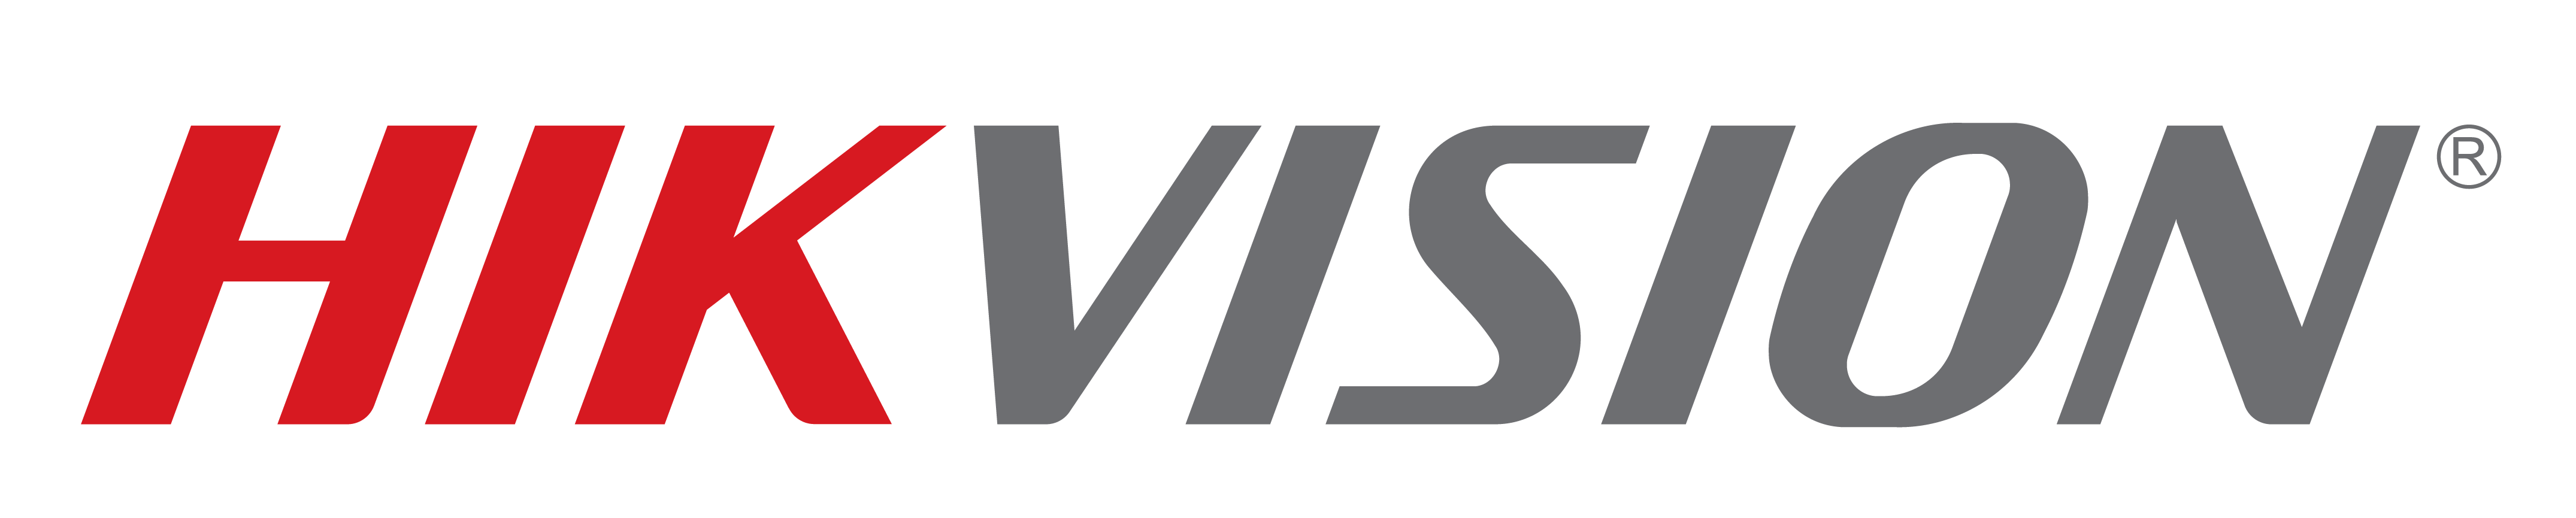 Hikvision Logo-R-01-1